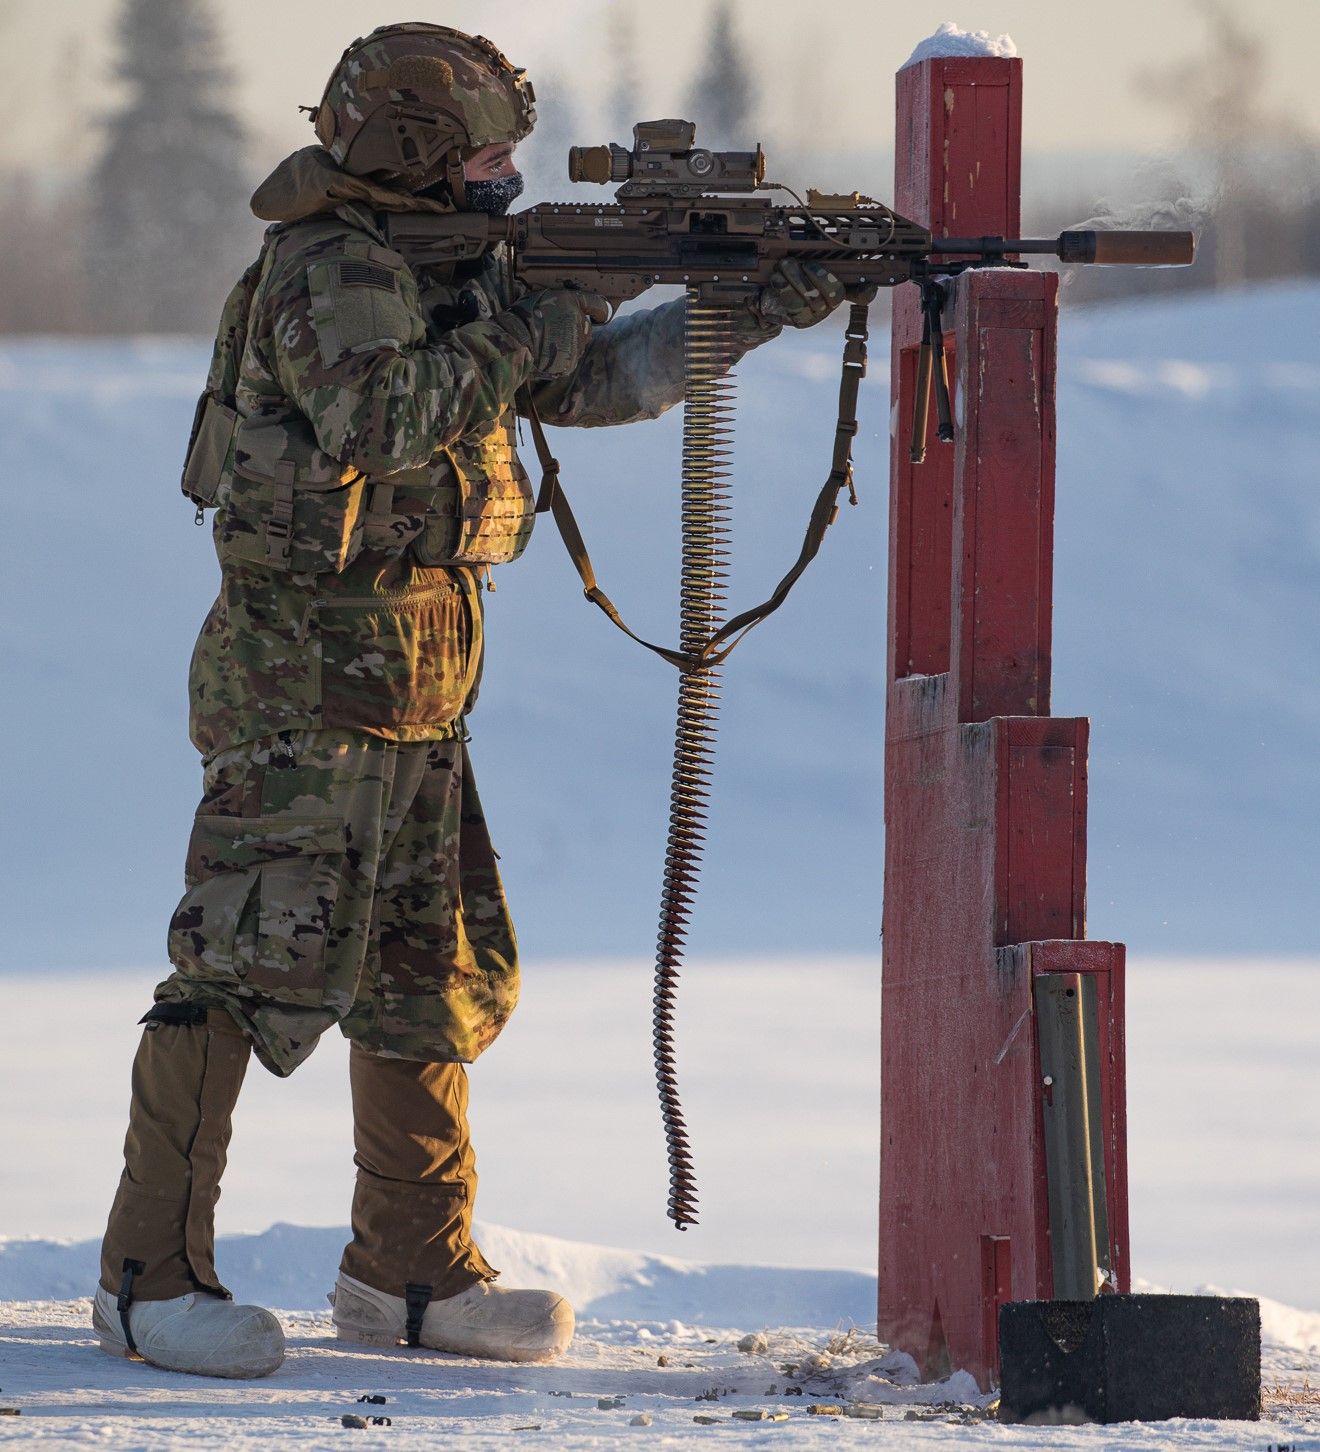 A soldier who fires a gun using a machine